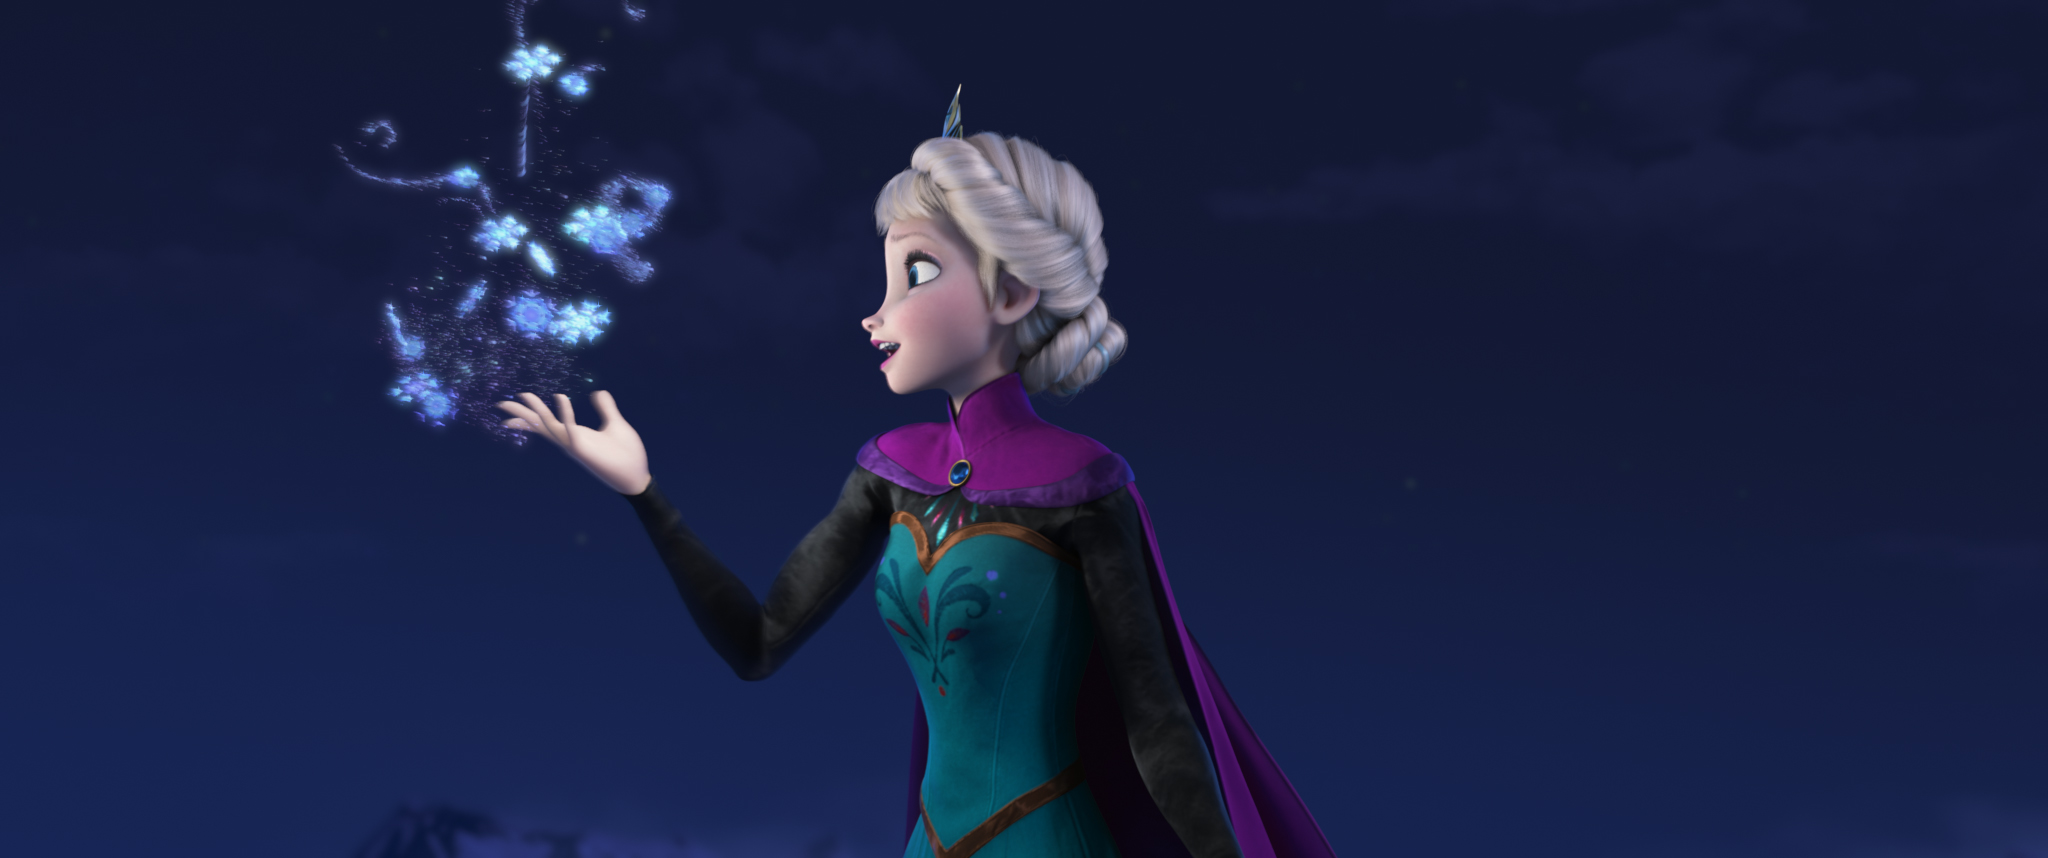 Frozen (2013 film) - Wikipedia